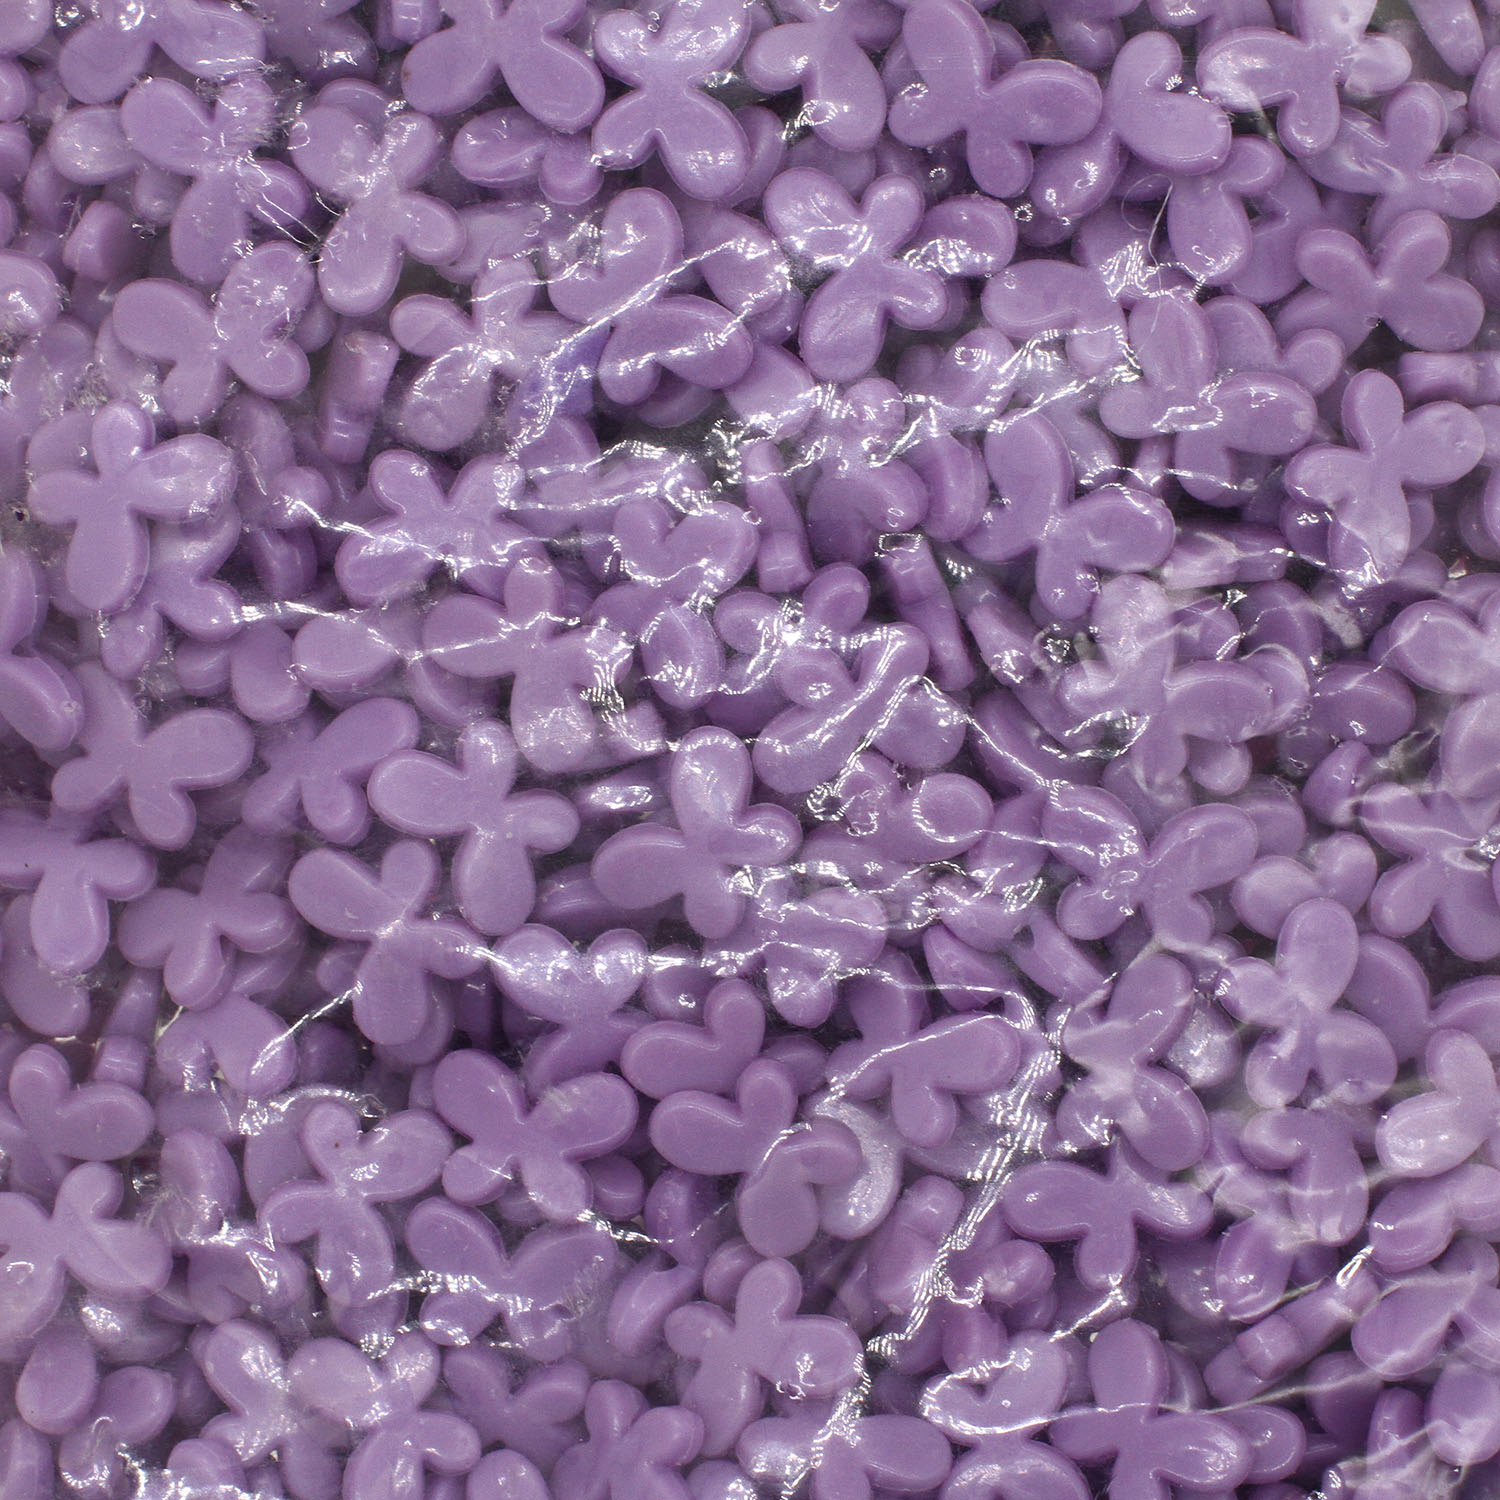 1:violetti